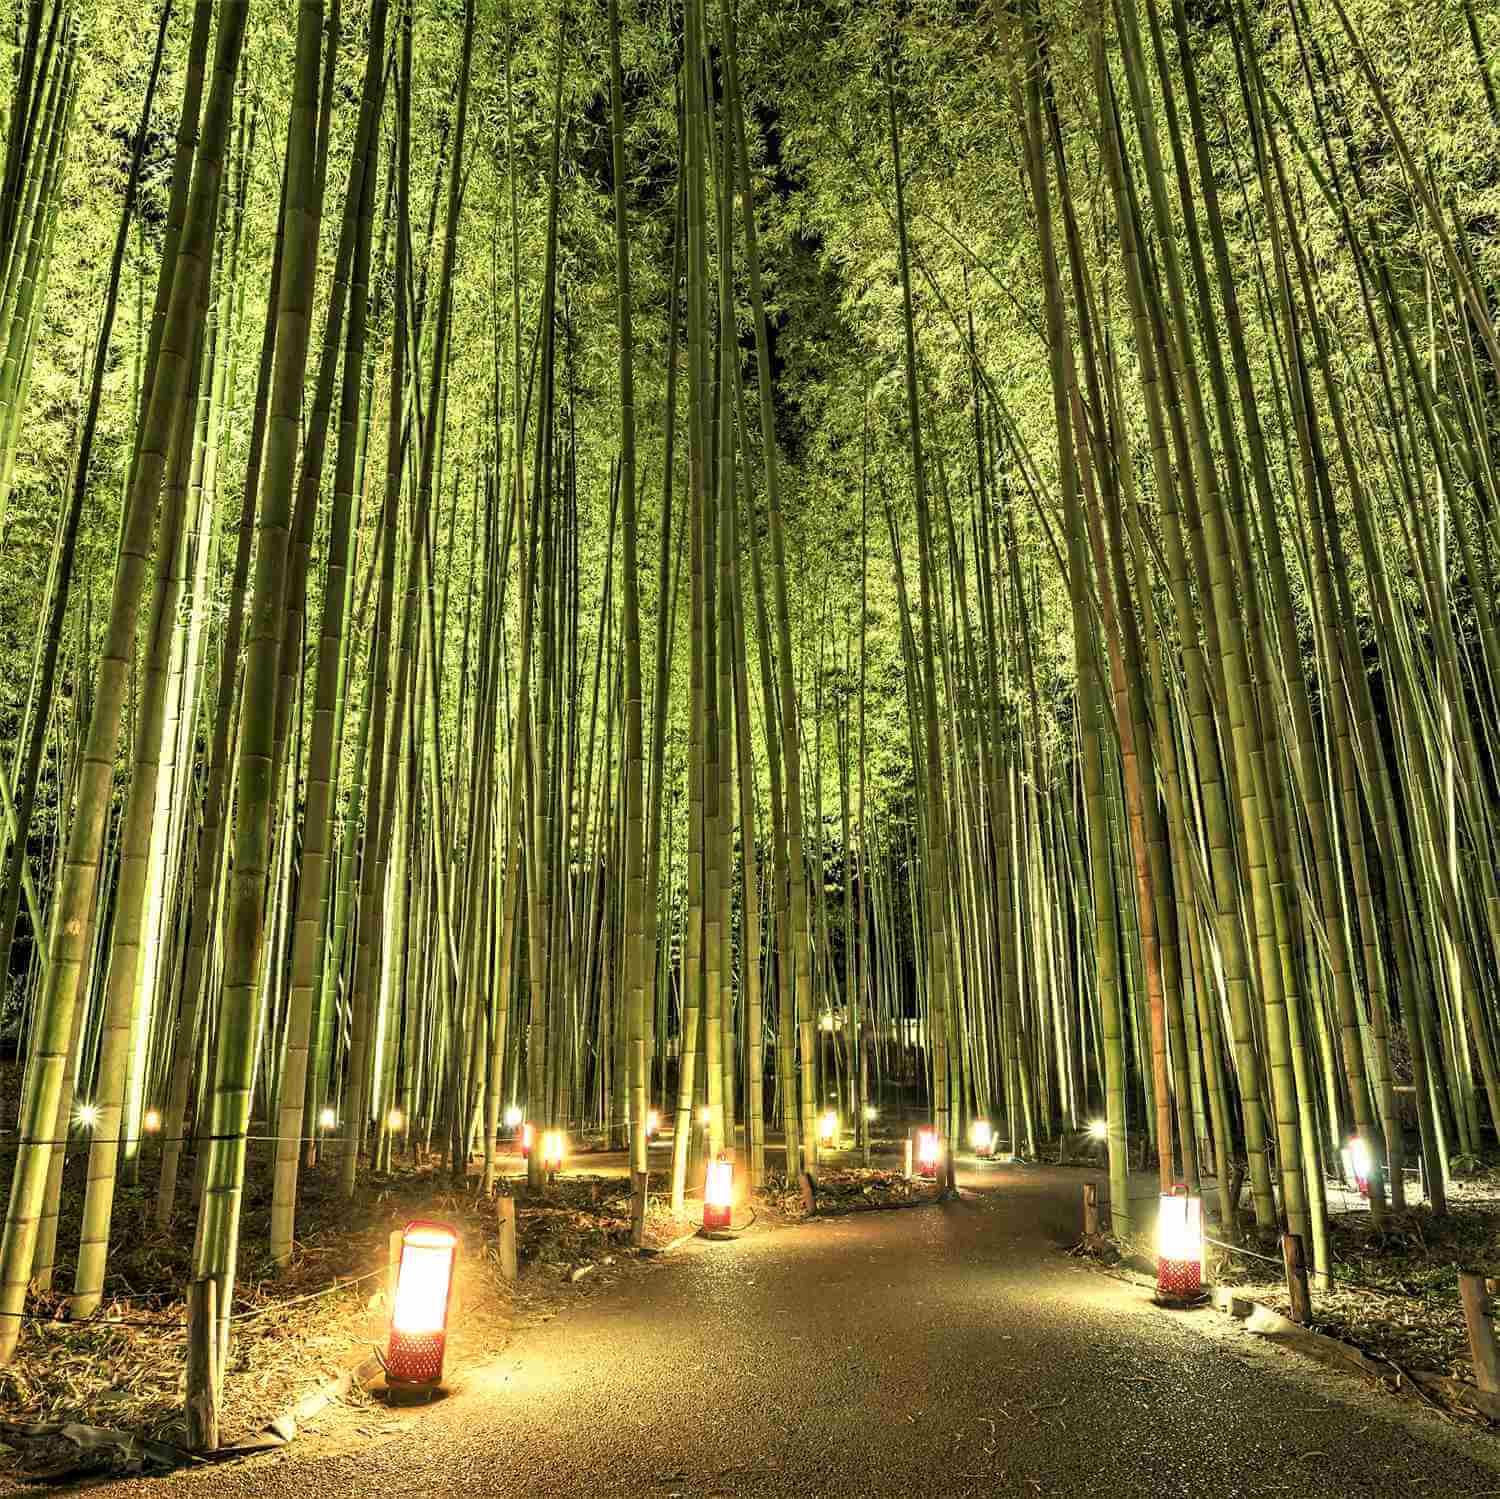 The fantastic illumination “Hanatouro” in Arashiyama, Kyoto = Shutterstock 8